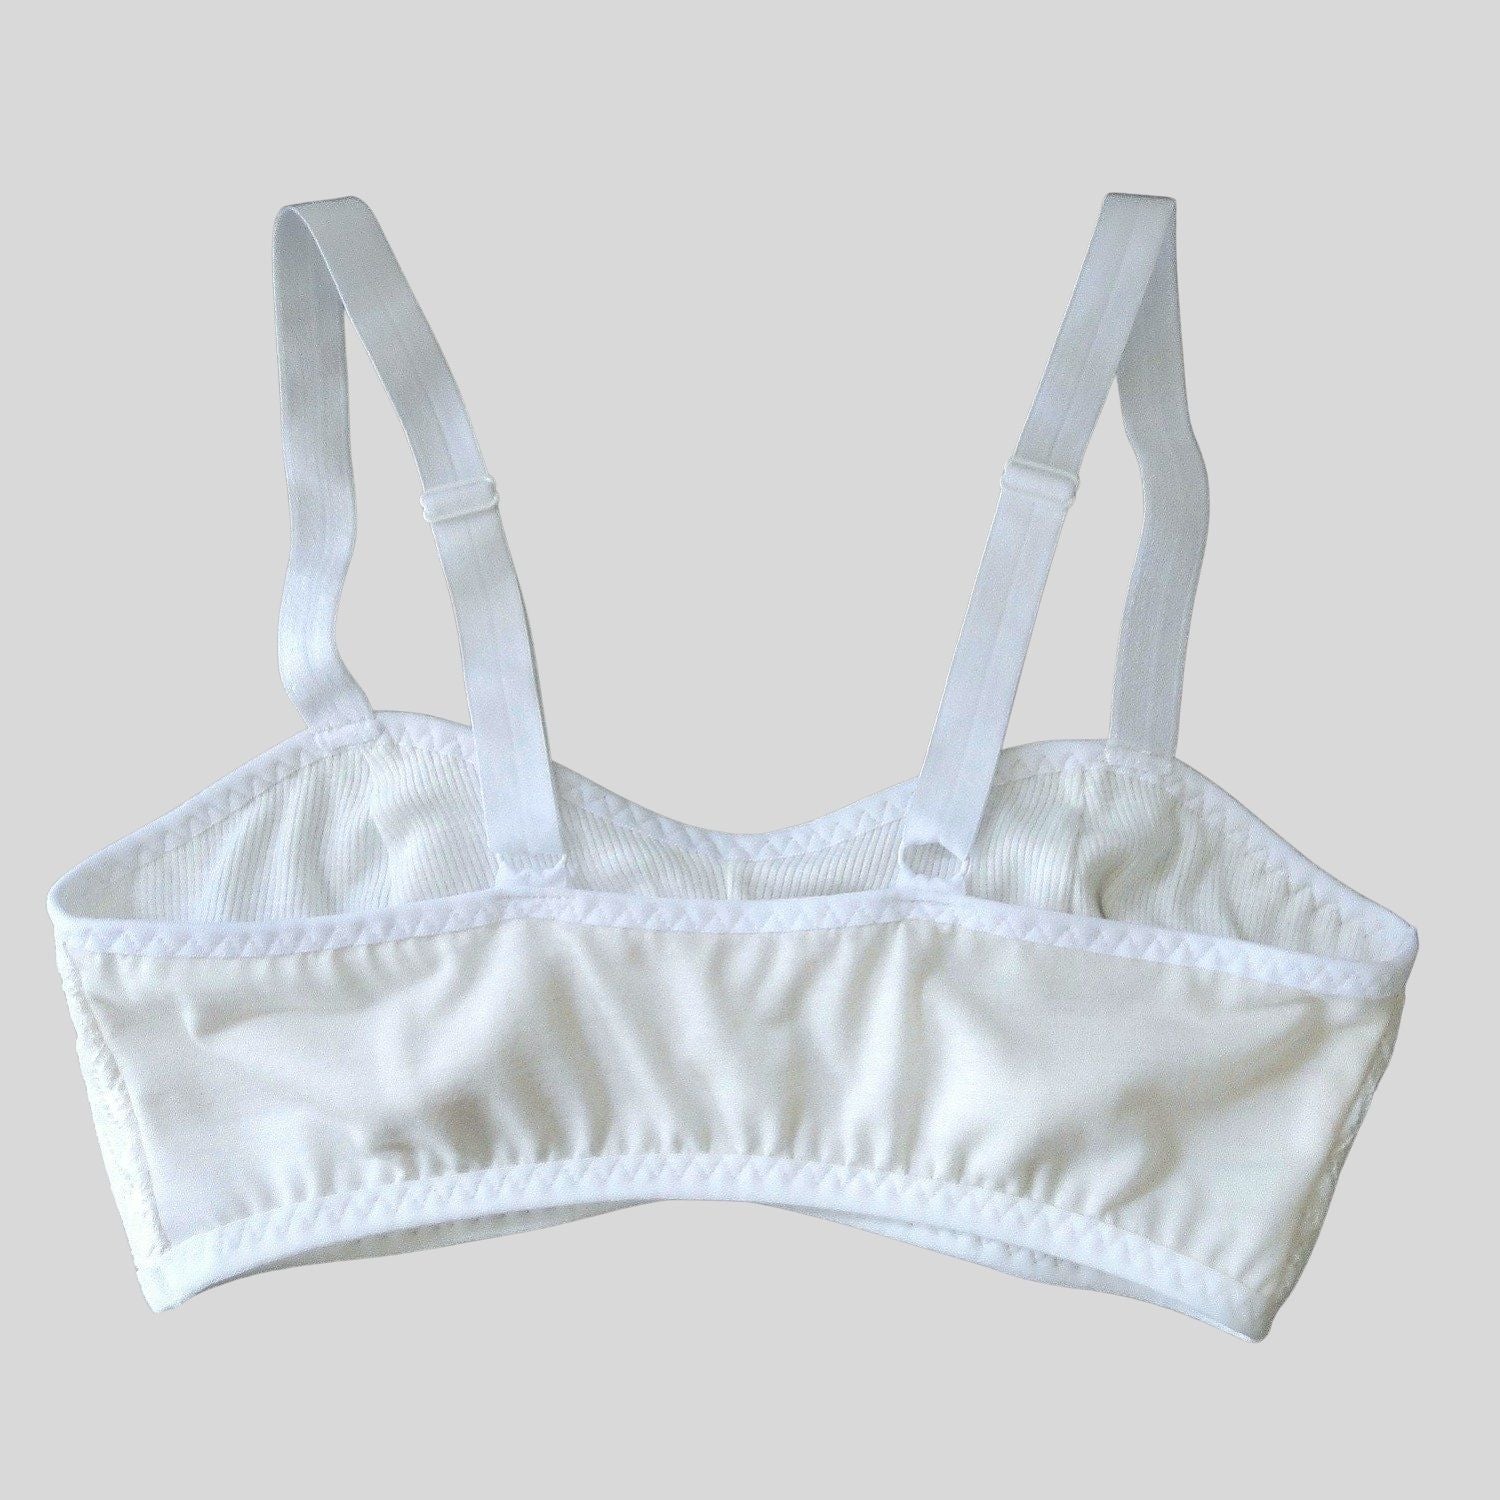 White Merino wool bralettes | Shop wool lingerie for women | Made in Canada women's wool underwear 